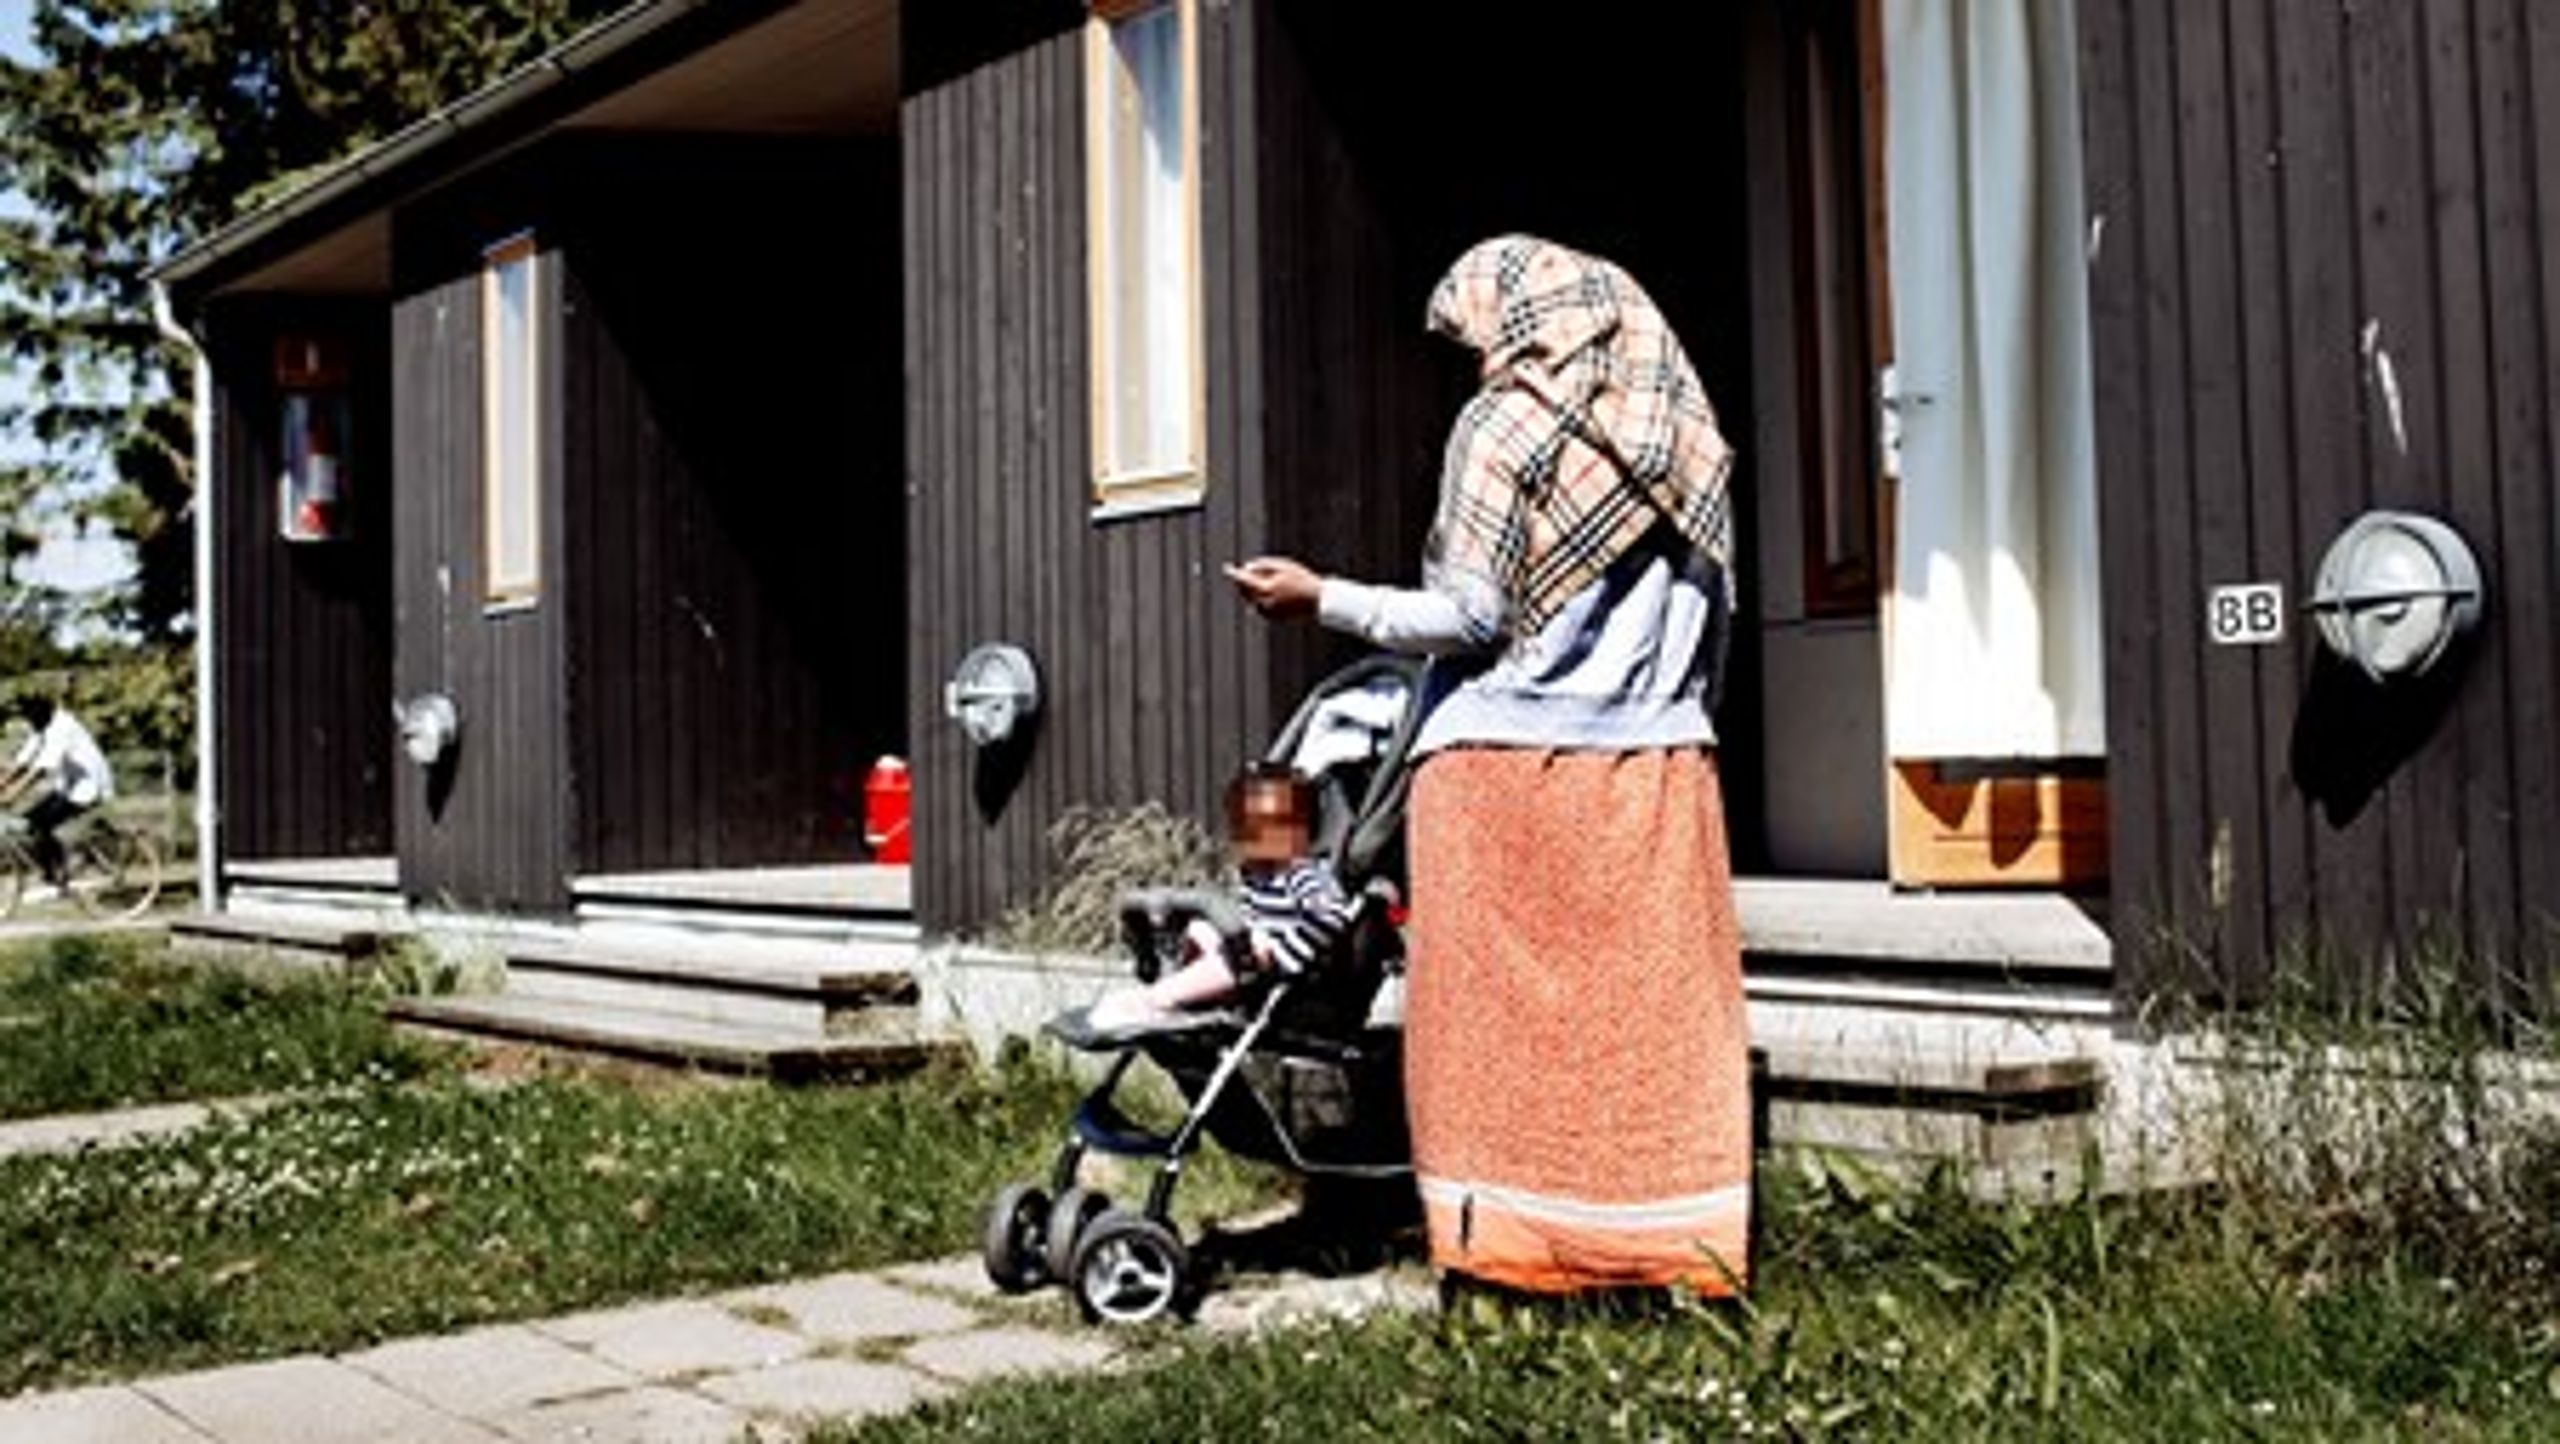 Emner som flygtningestrømme, familiesammenføringer og parallelsamfund optager stadig en&nbsp;stor del af danskerne.<br>